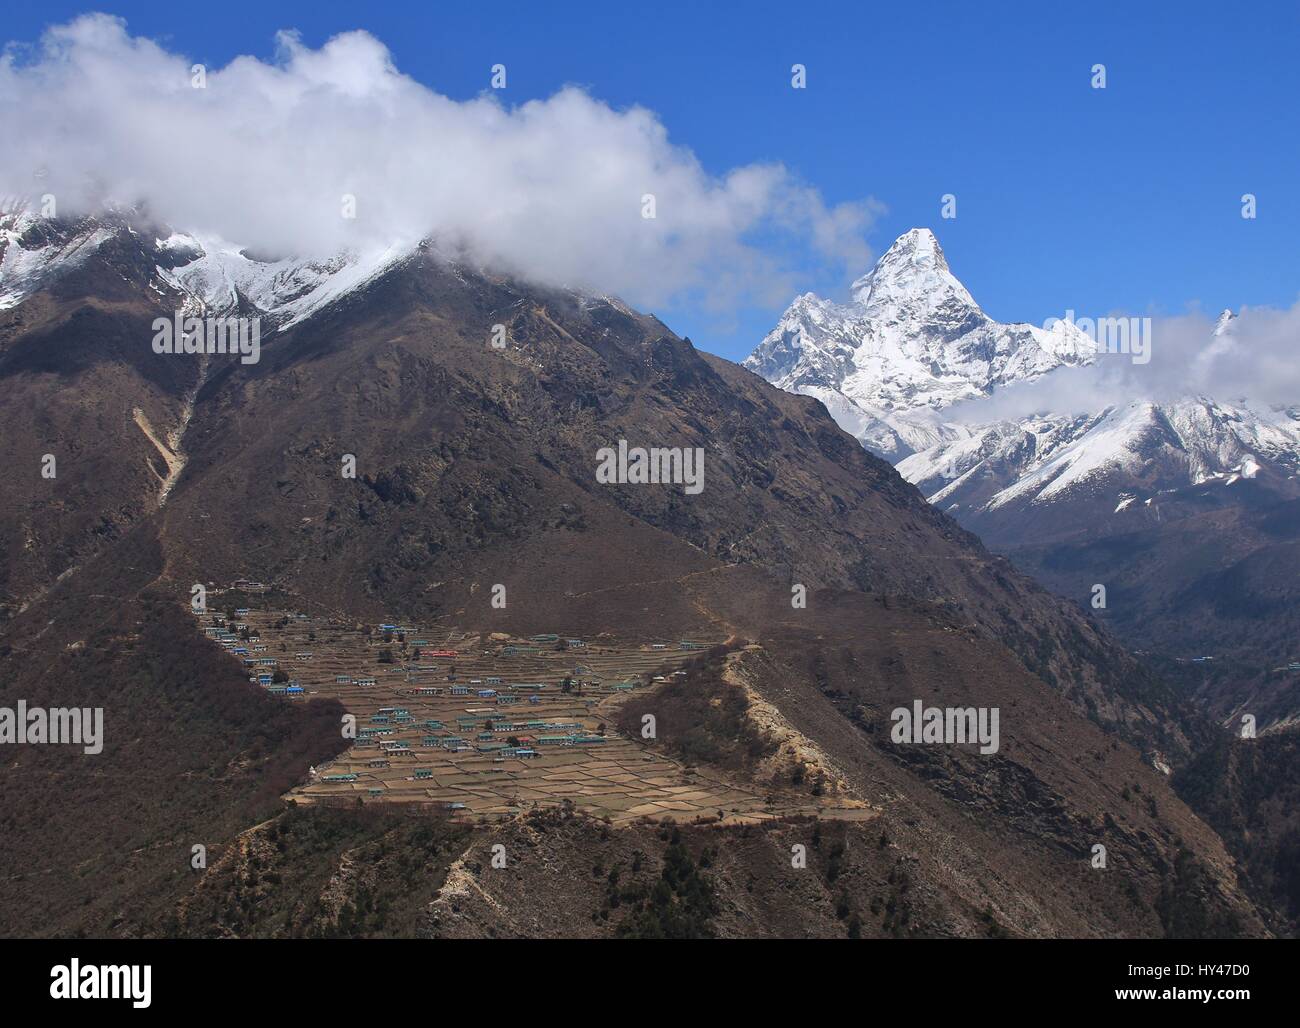 Sherpa village Phortse. Peak of Ama Dablam. Spring scene on the way to Everest base camp, Nepal. Stock Photo